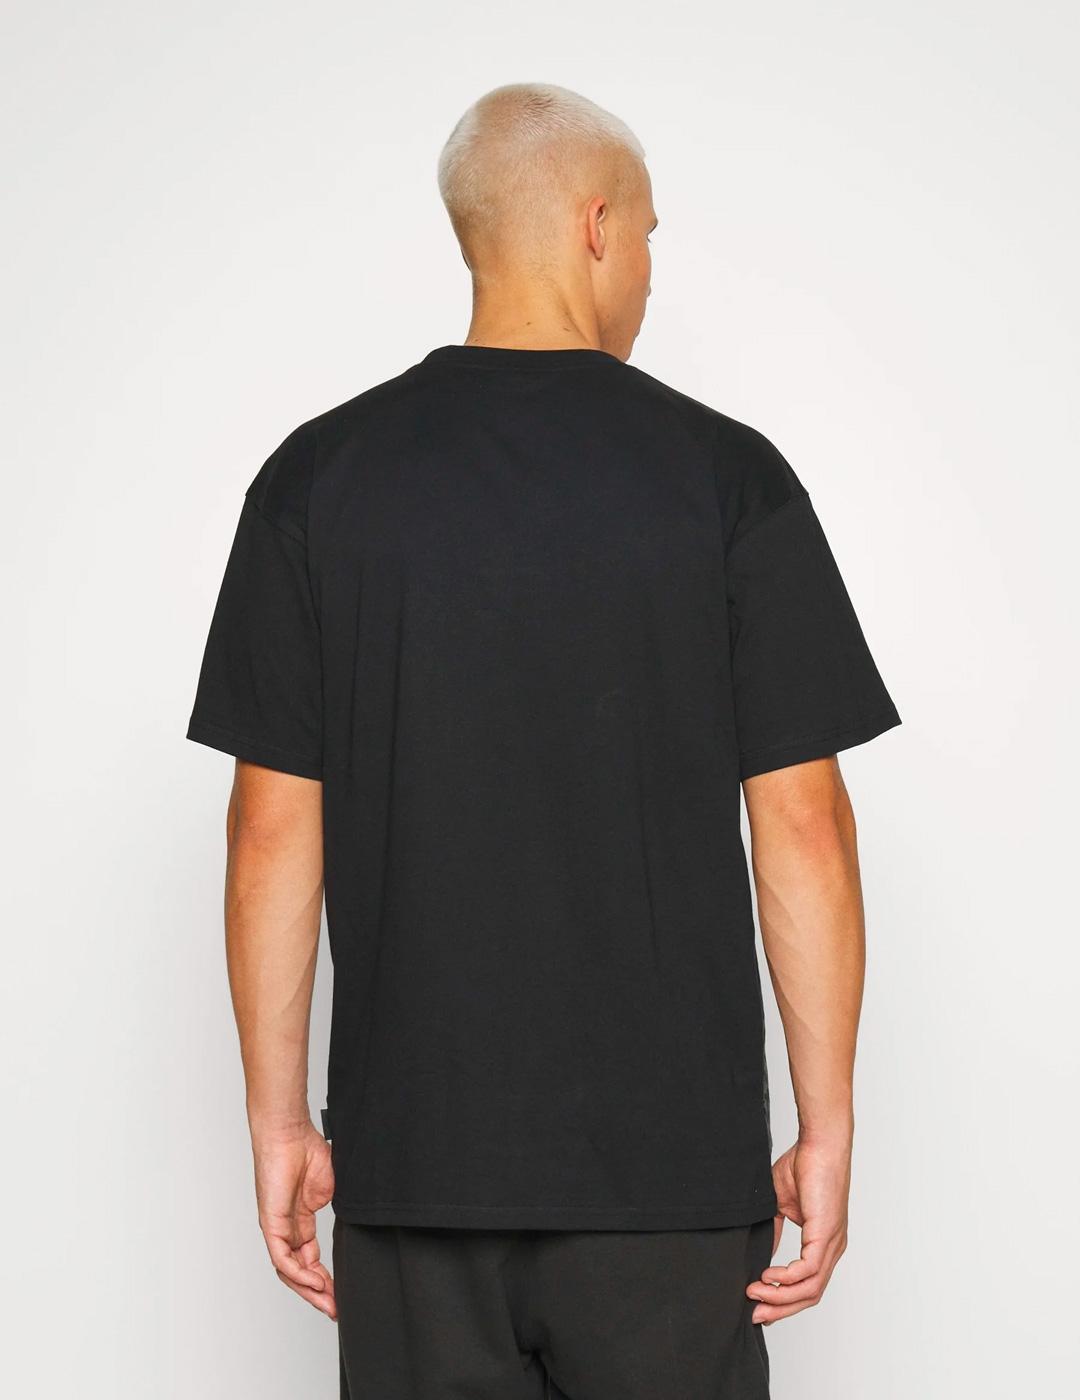 Camiseta Ellesse 'Ponzate' Negro